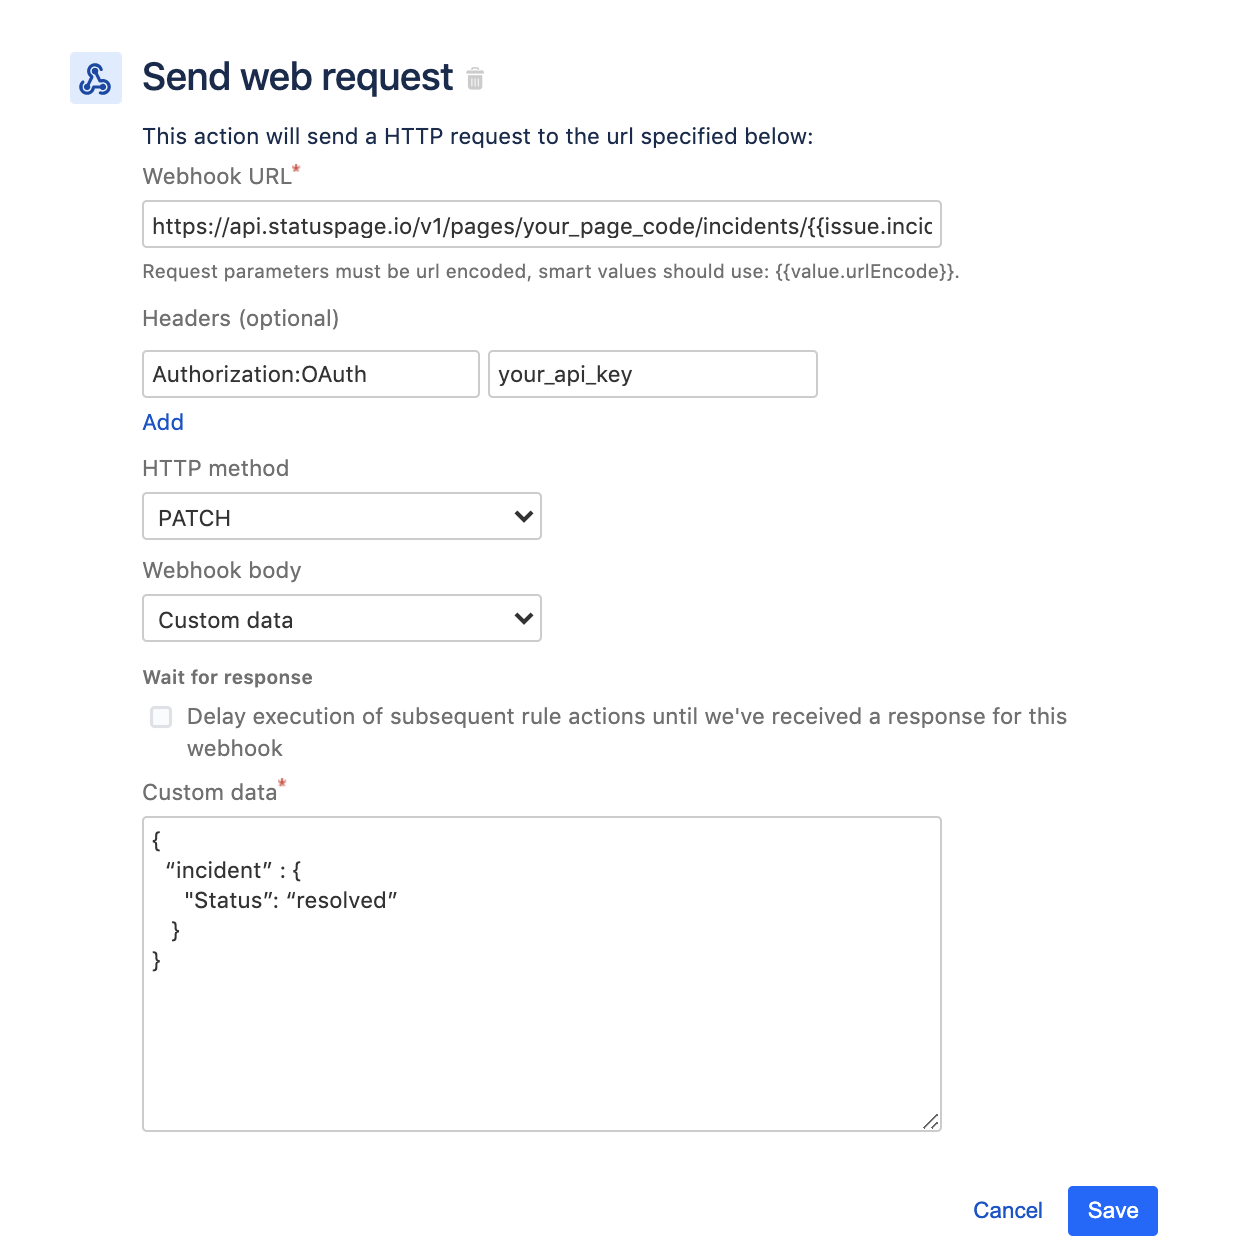 Send web request (Wyślij żądanie internetowe)